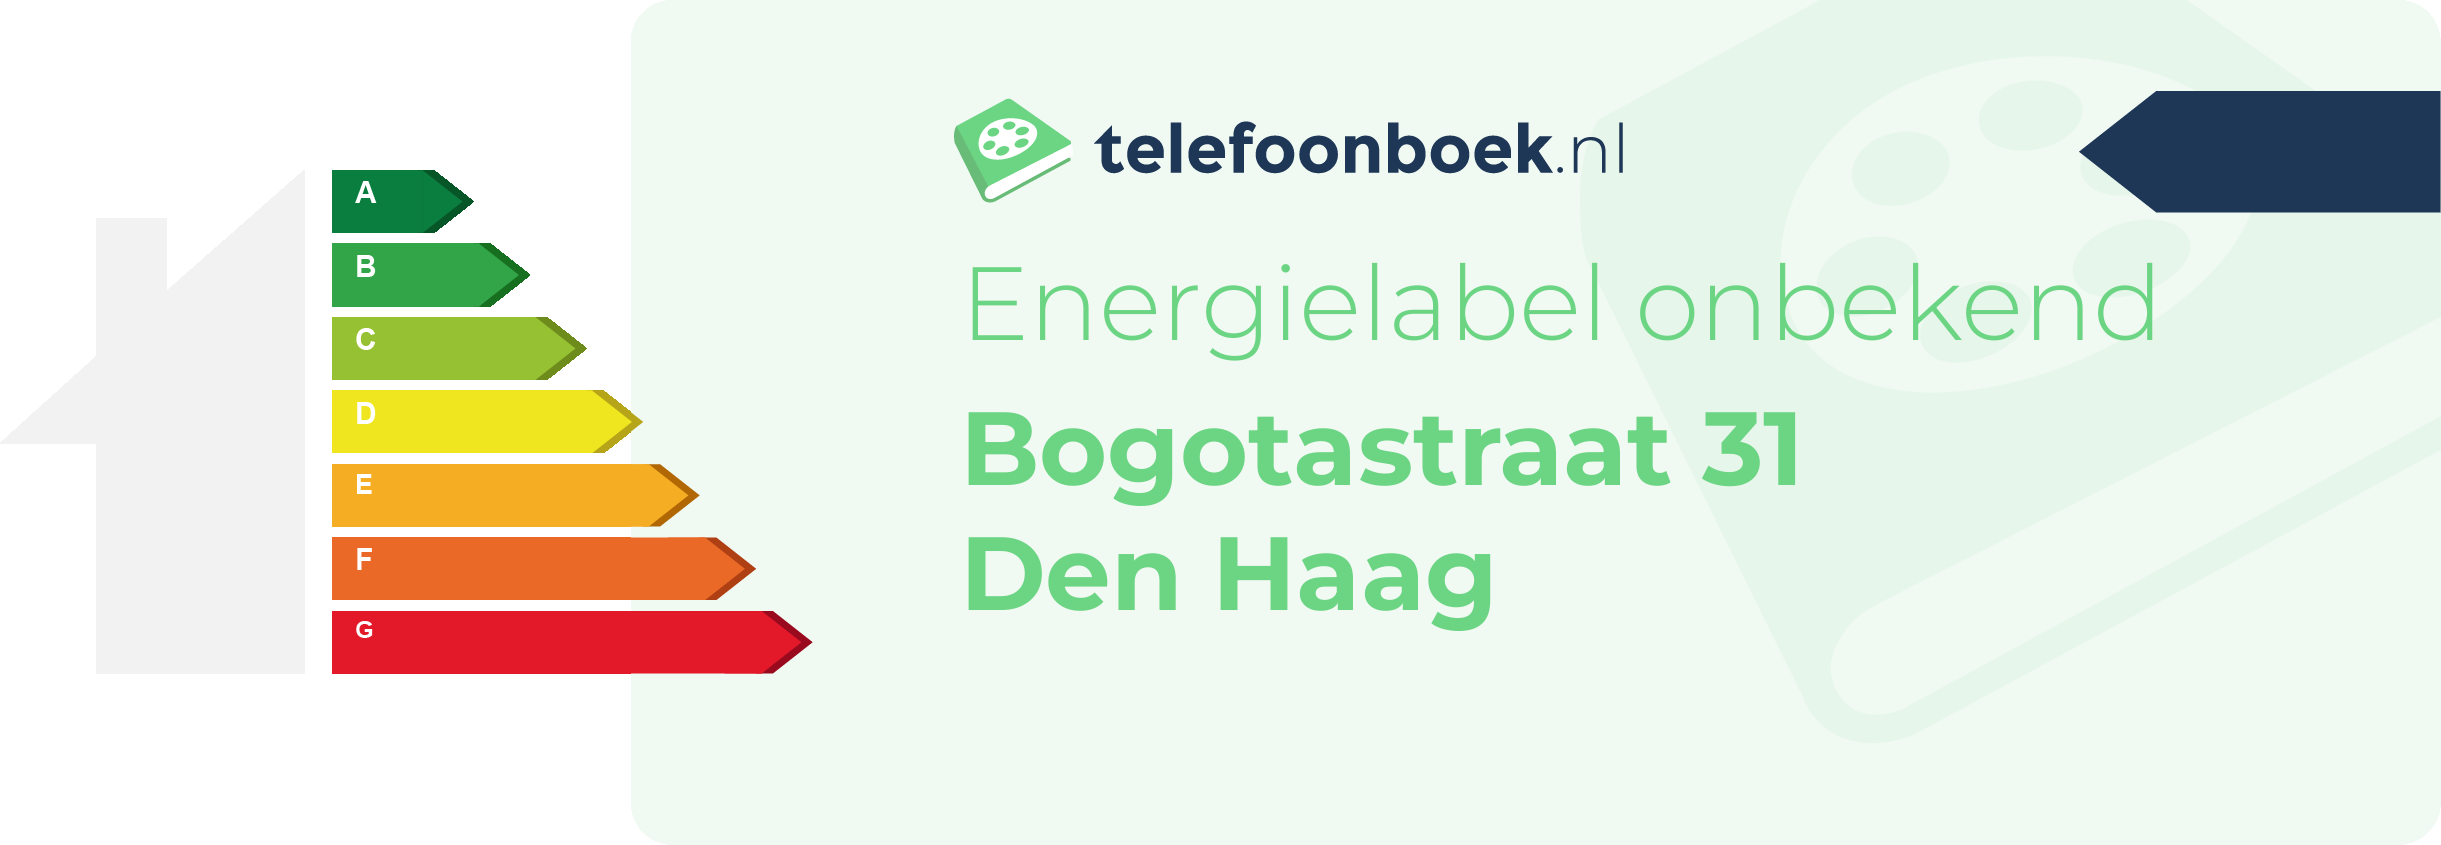 Energielabel Bogotastraat 31 Den Haag